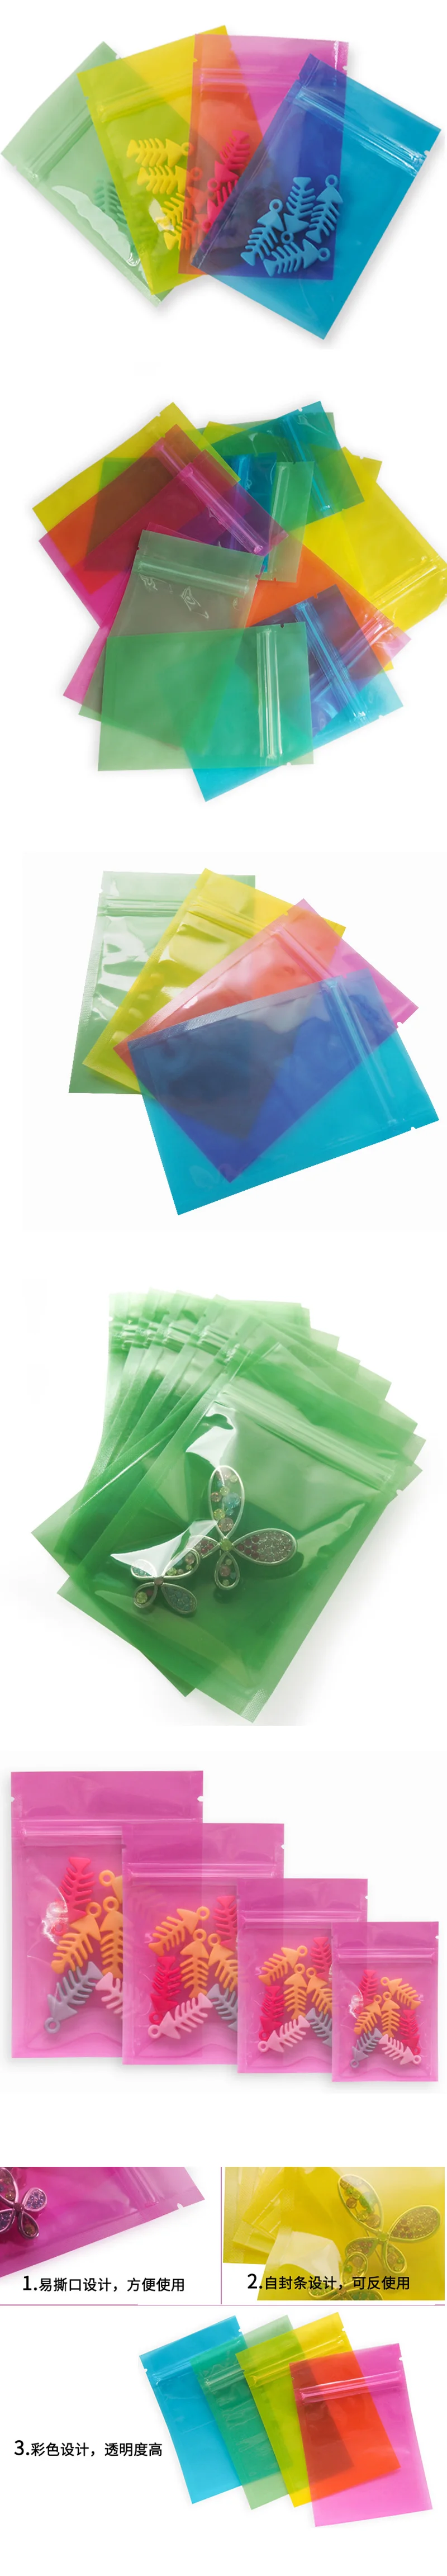 100 шт/500 шт 8x12 см цветные Самоуплотняющиеся пластиковые пакеты, маленькие пластиковые пакеты с застежкой-молнией премиум-класса, красные пластиковые пакеты с застежкой-молнией